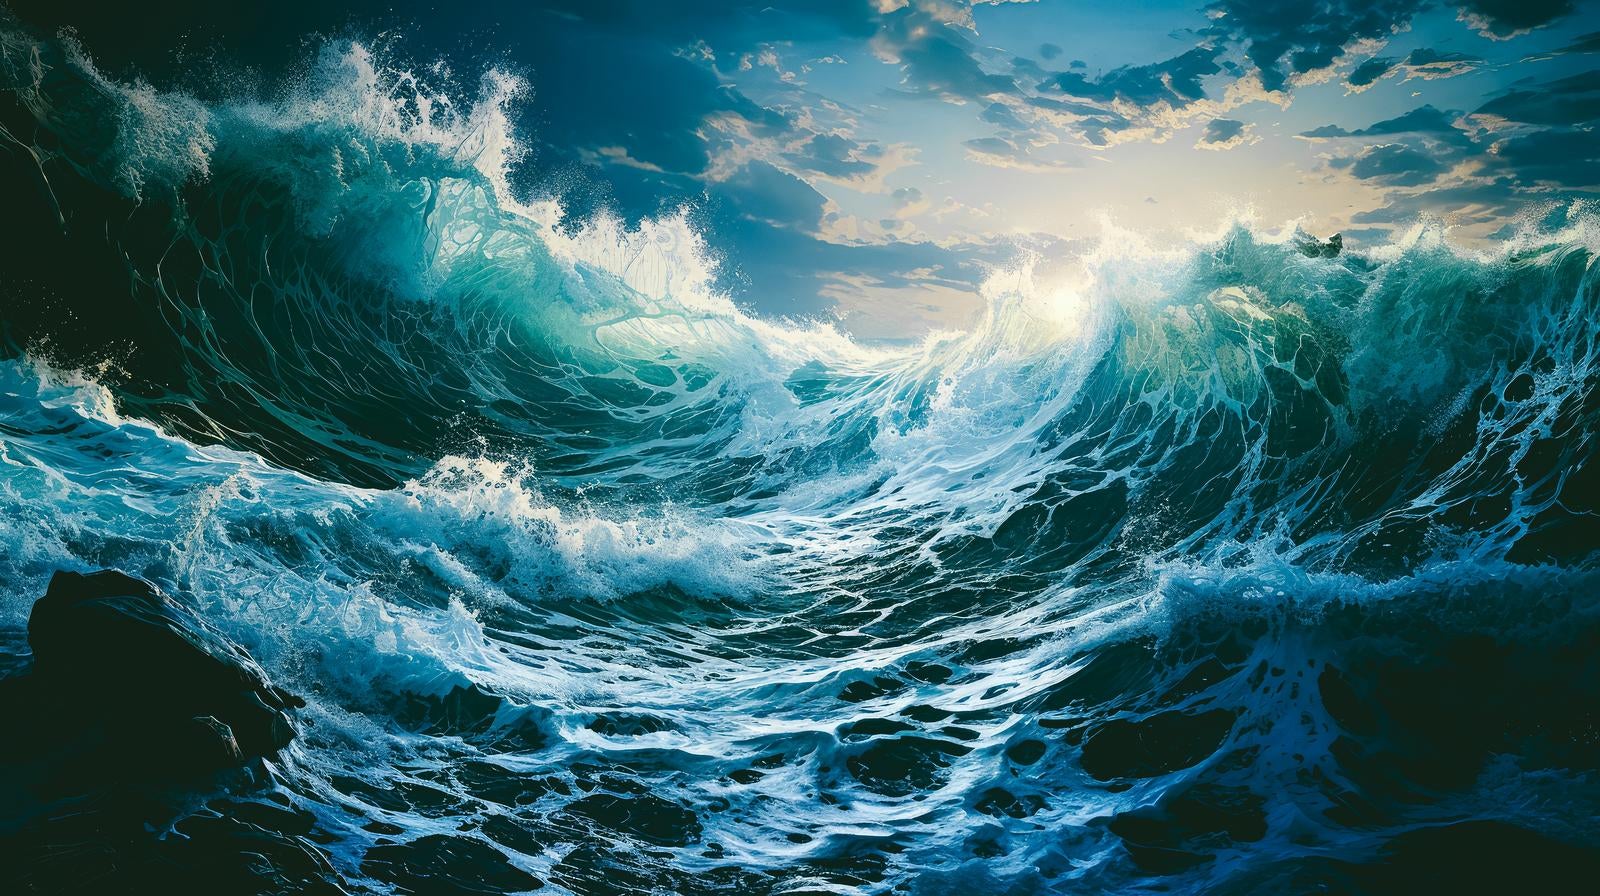 「荒れ狂う波と風の力」の写真